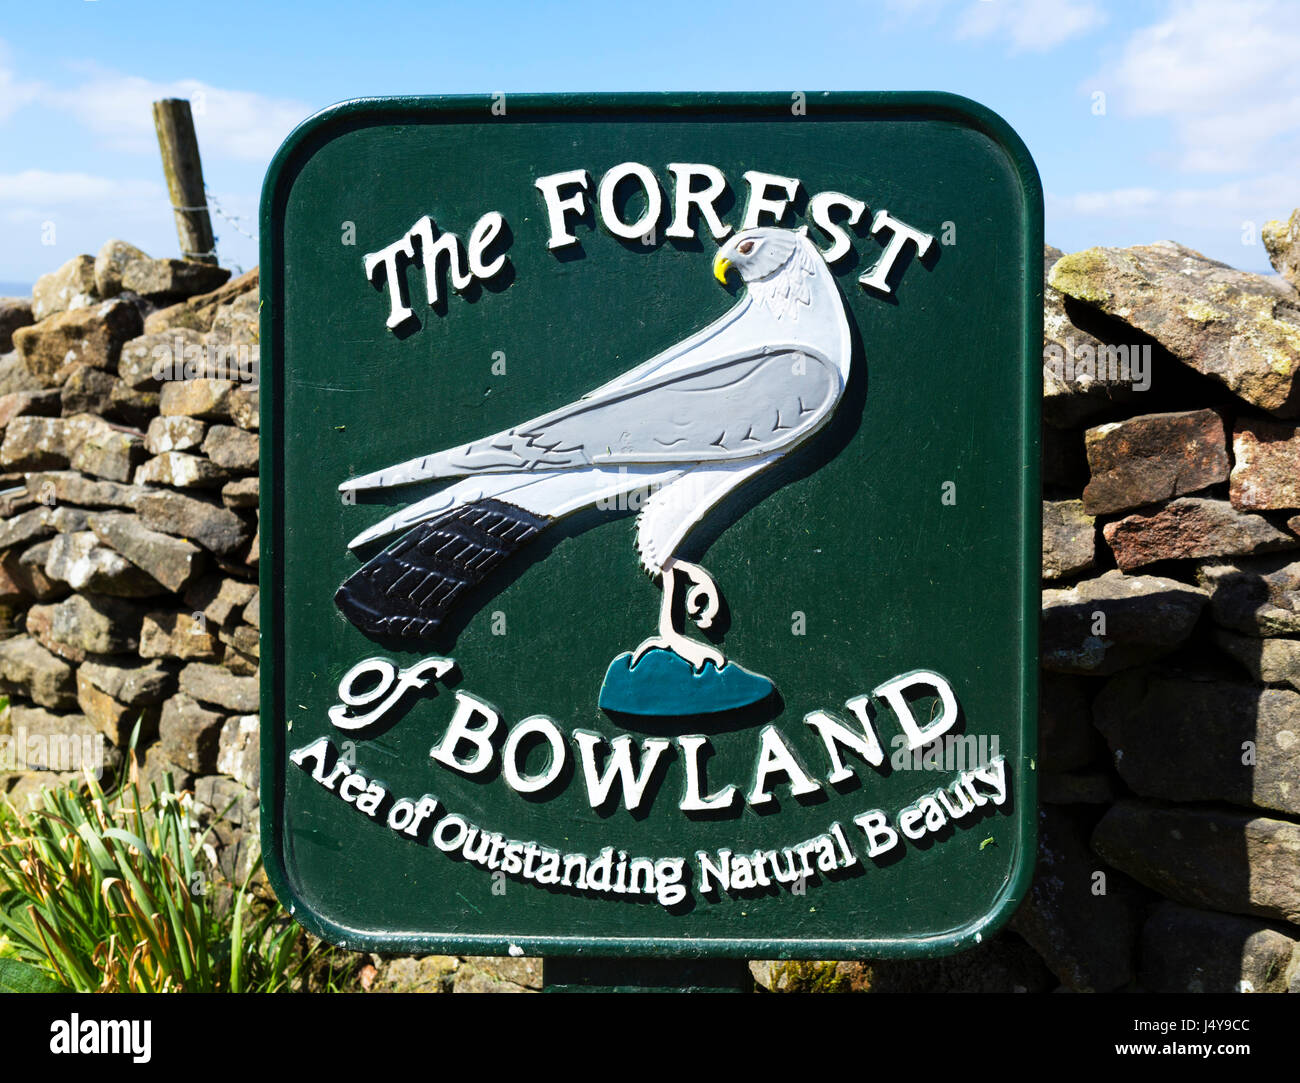 Forest of Bowland, Lancashire, England, UK Stock Photo